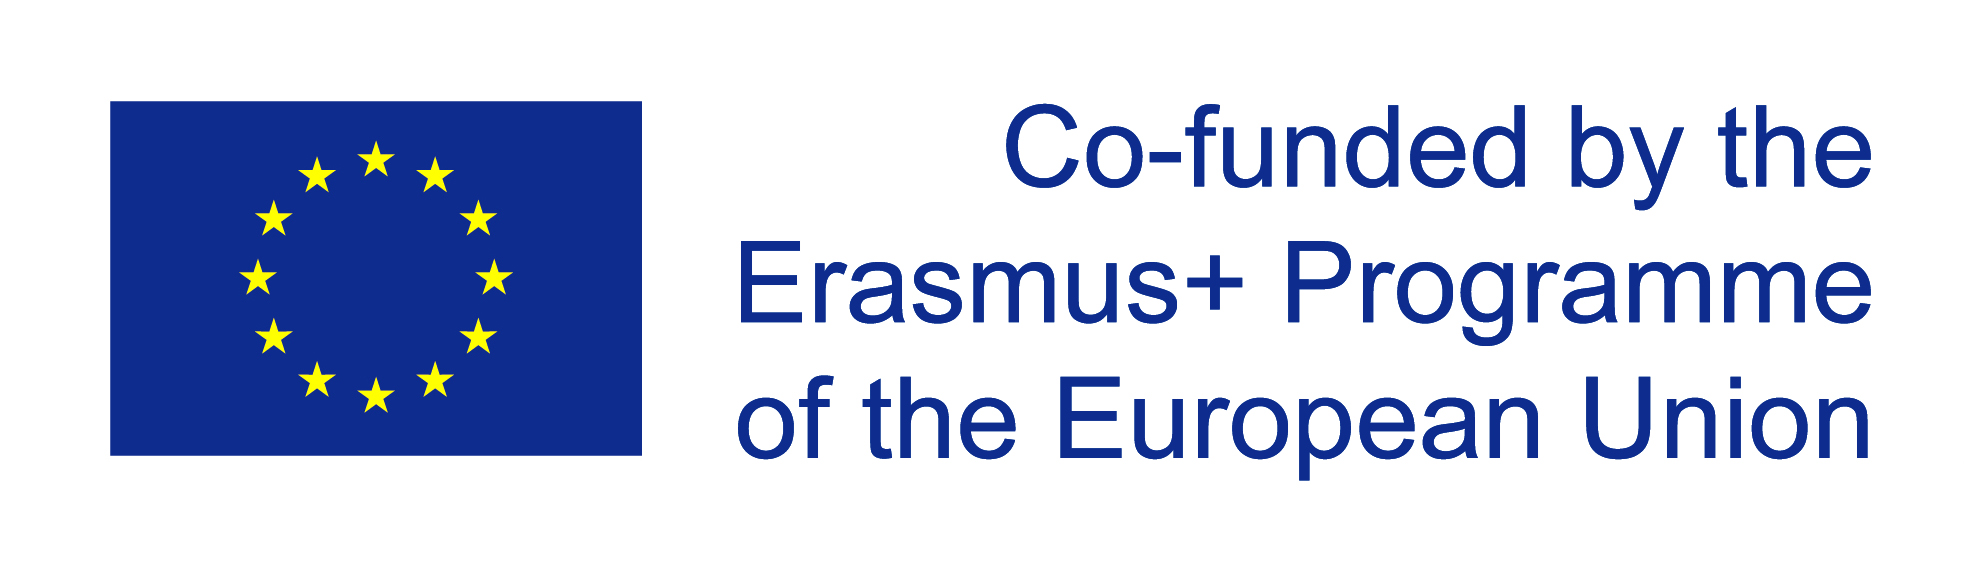 eu-funded-logo